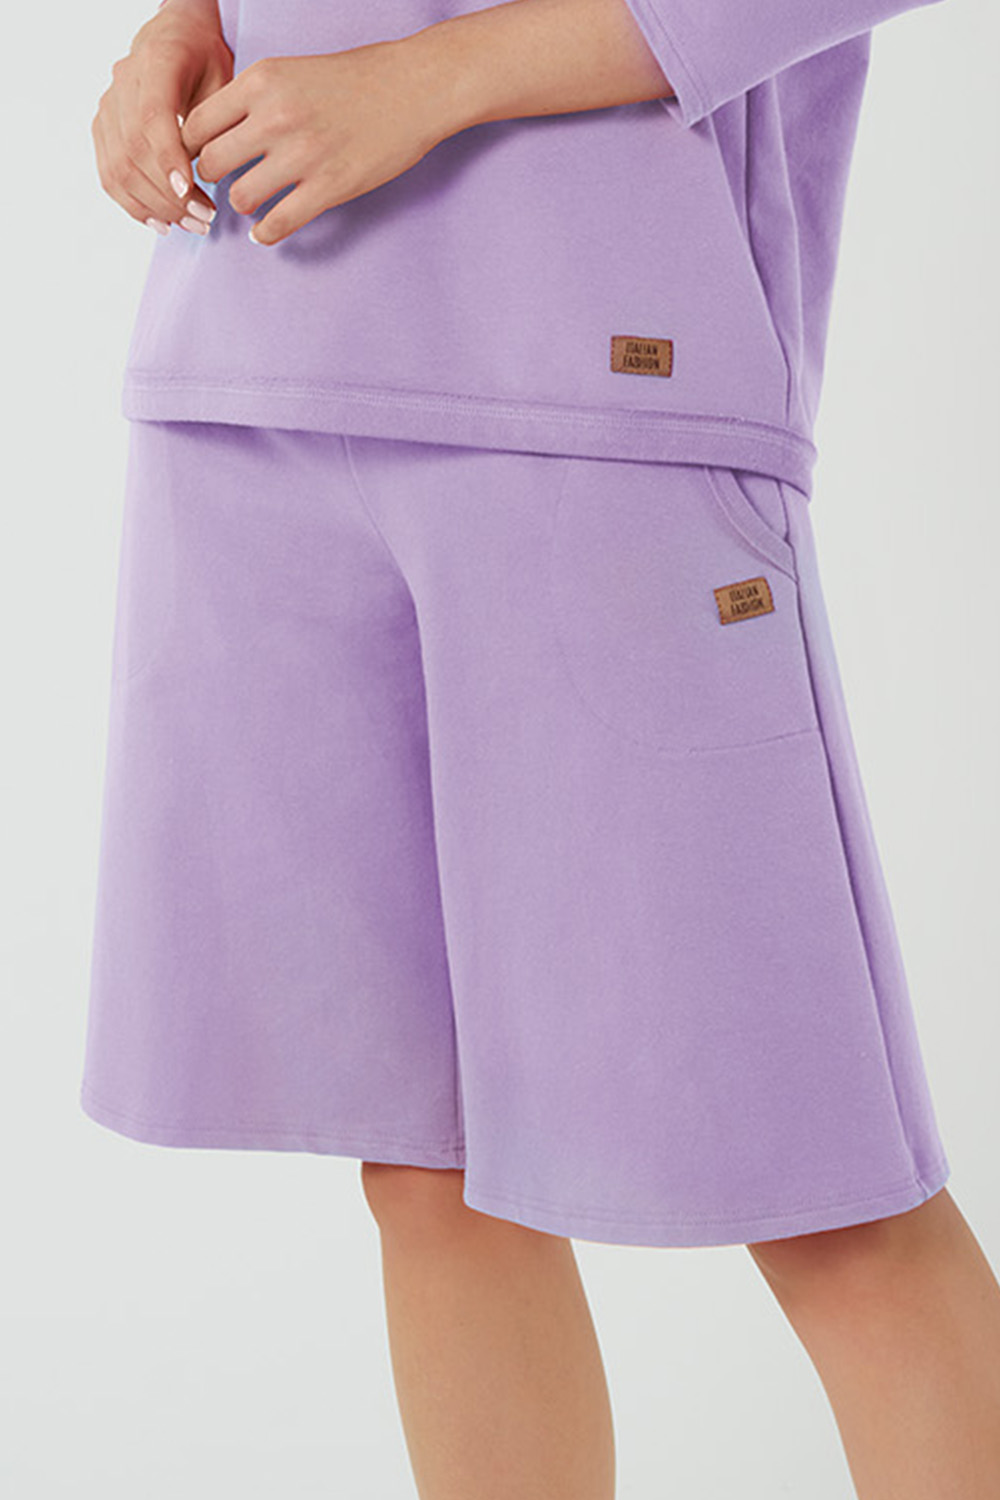 Italian Fashion Madri sp.1/2 Spodnie szerokie, lila